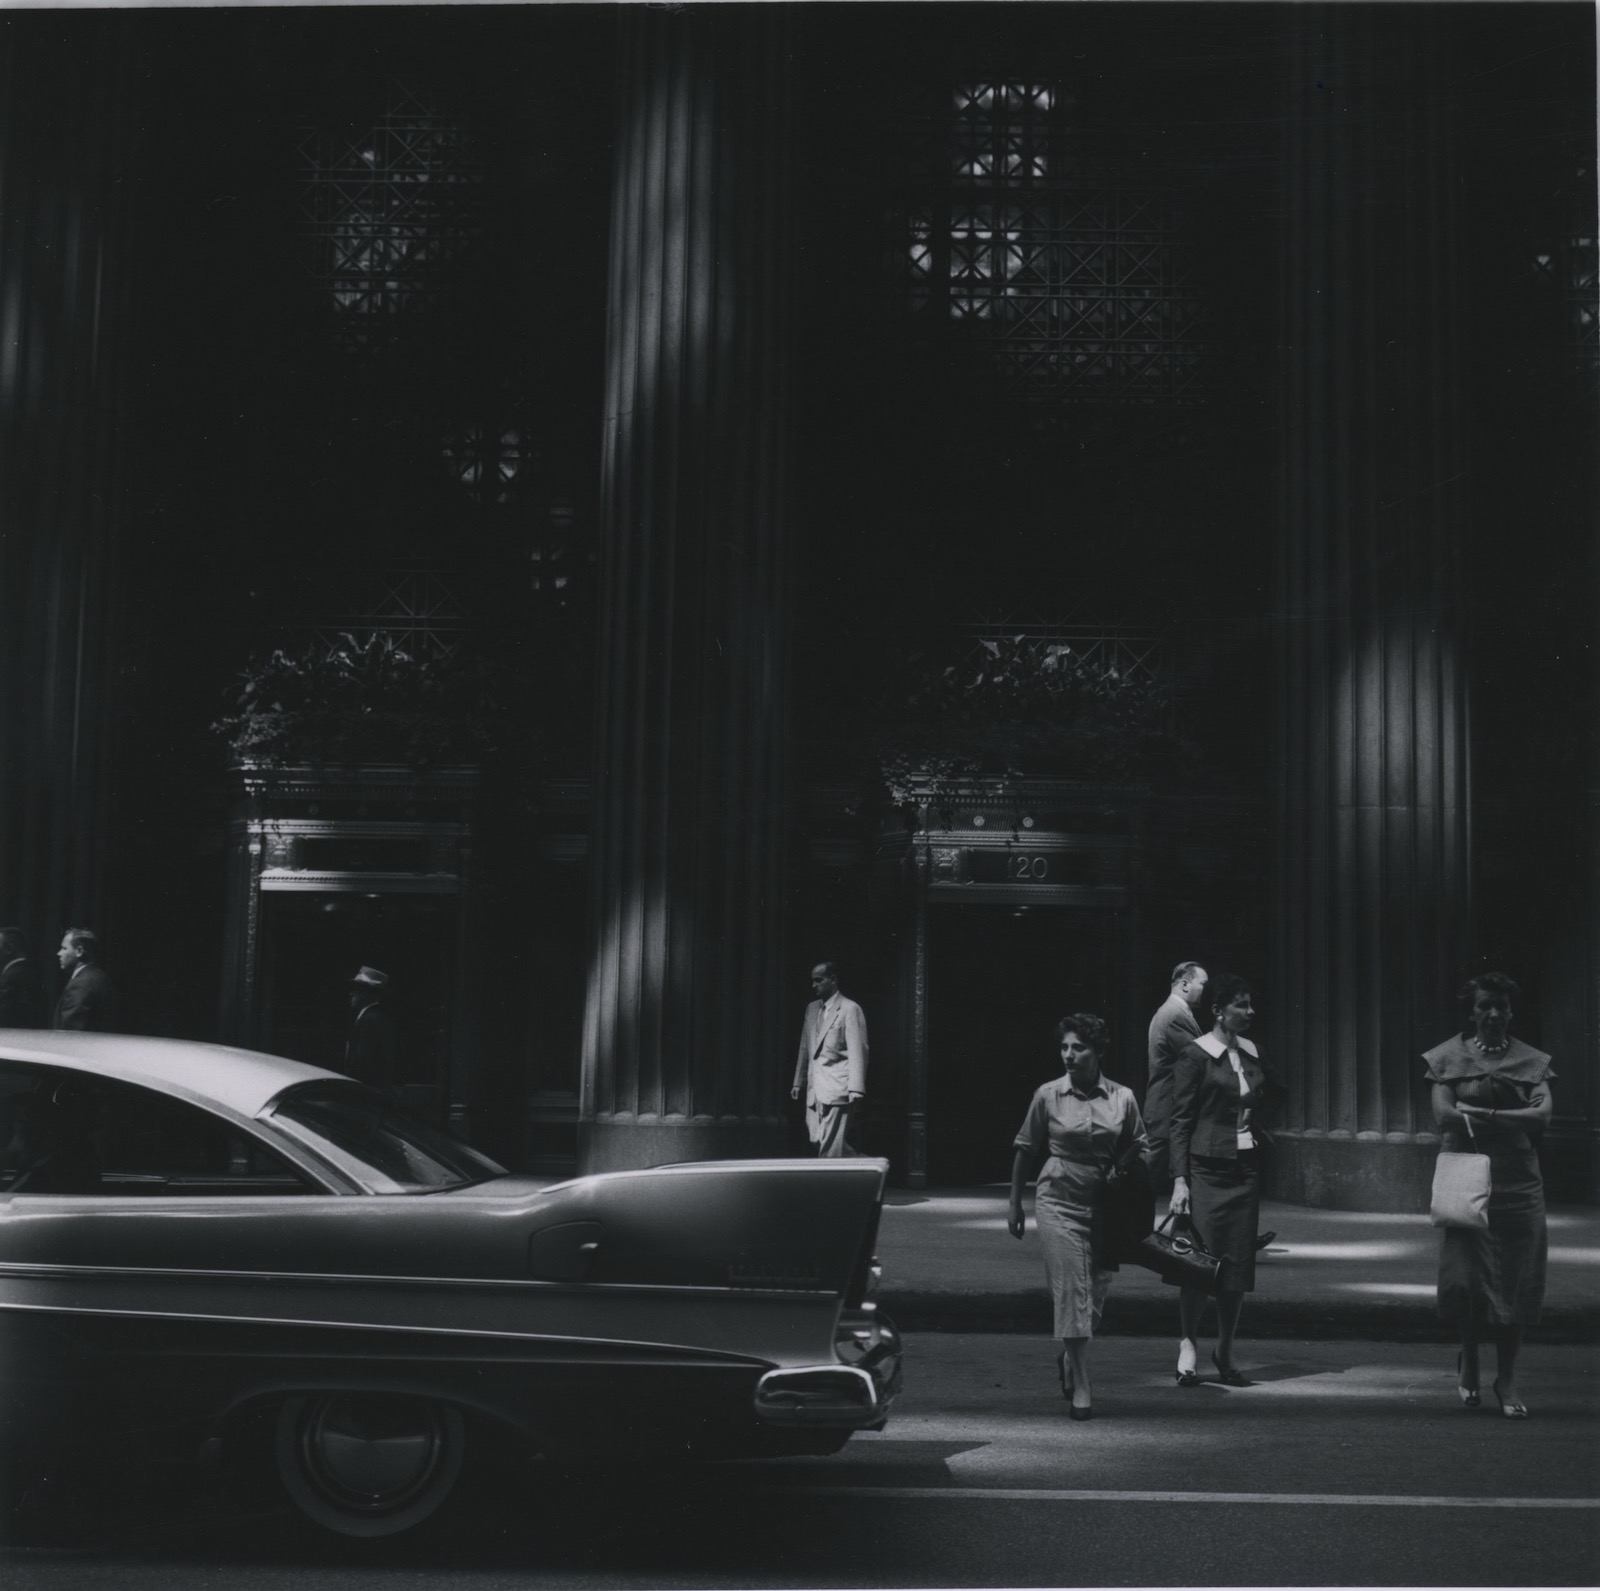 LaSalle St., Chicago, 1958